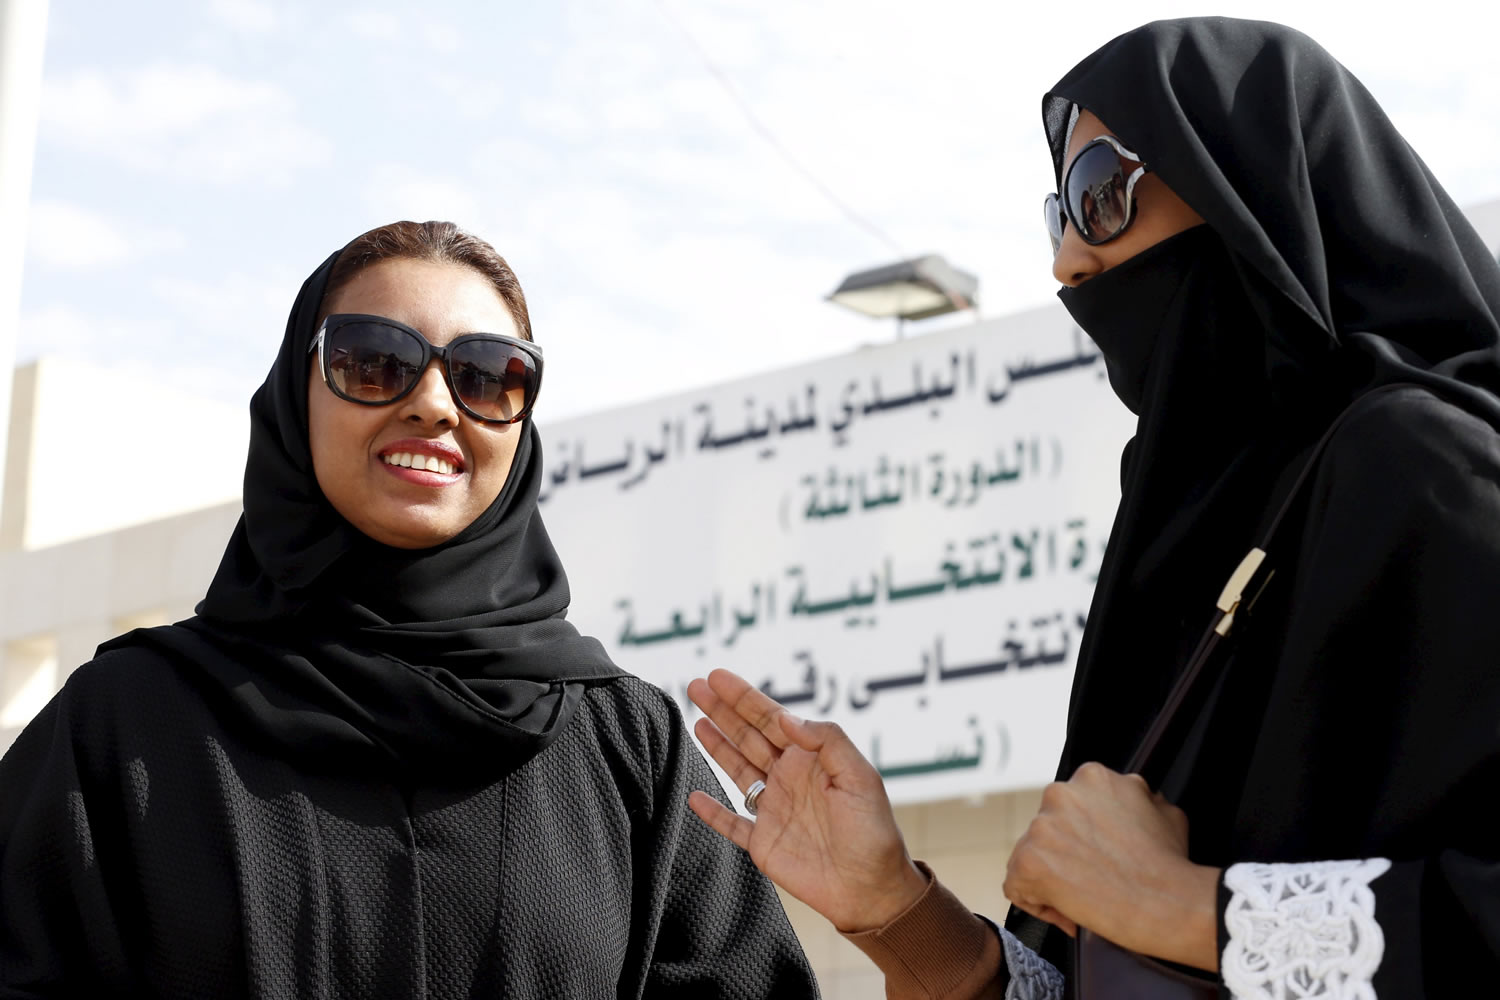 Una veintena de mujeres logran escaño por primera vez en Arabia Saudí